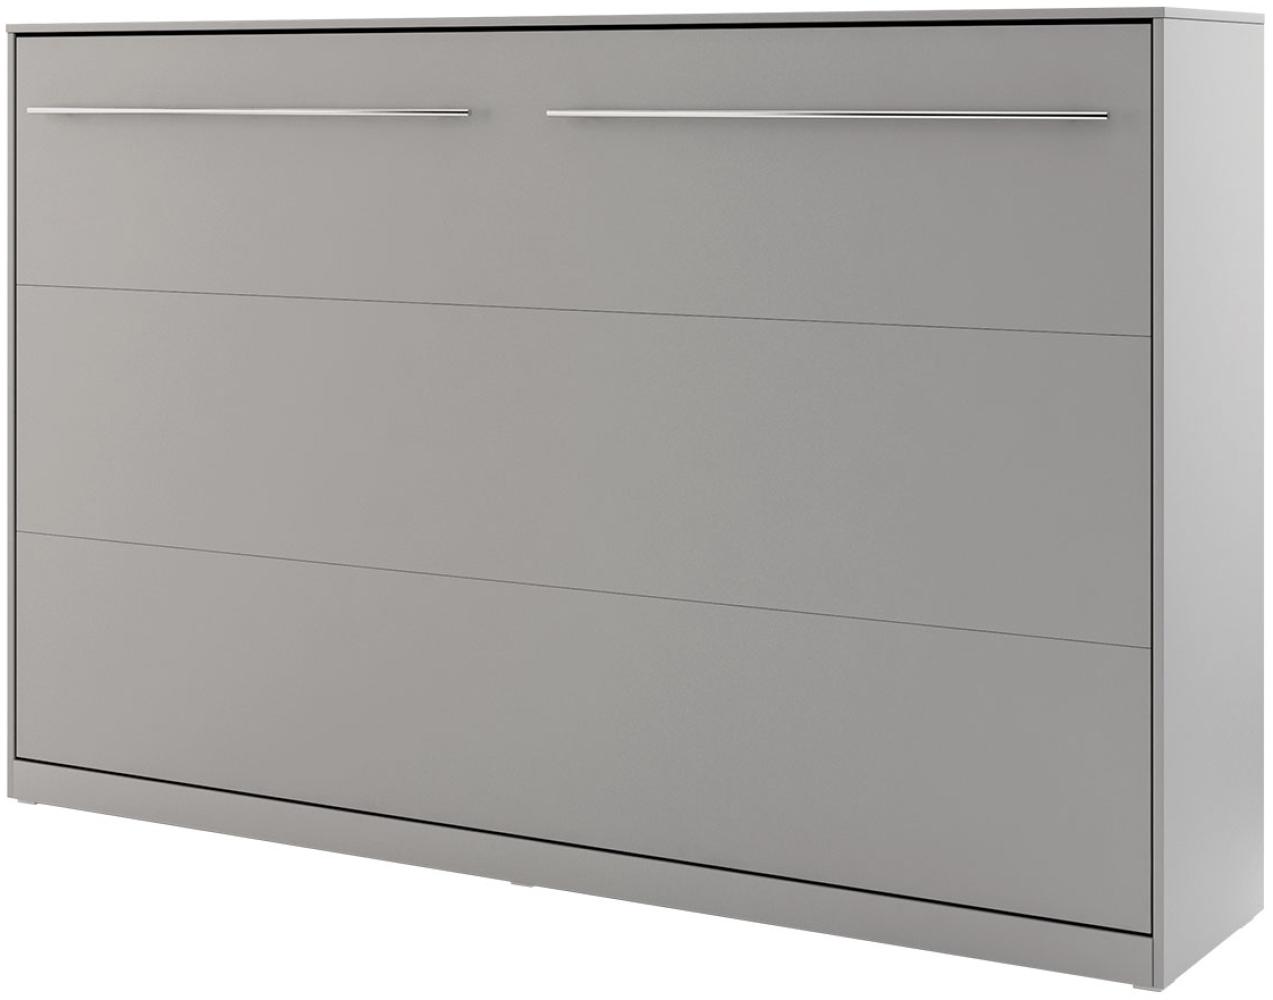 Schrankbett Concept Pro II Horizontal CP-04 (Farbe: Grau, Größe: 140x200 cm) Bild 1